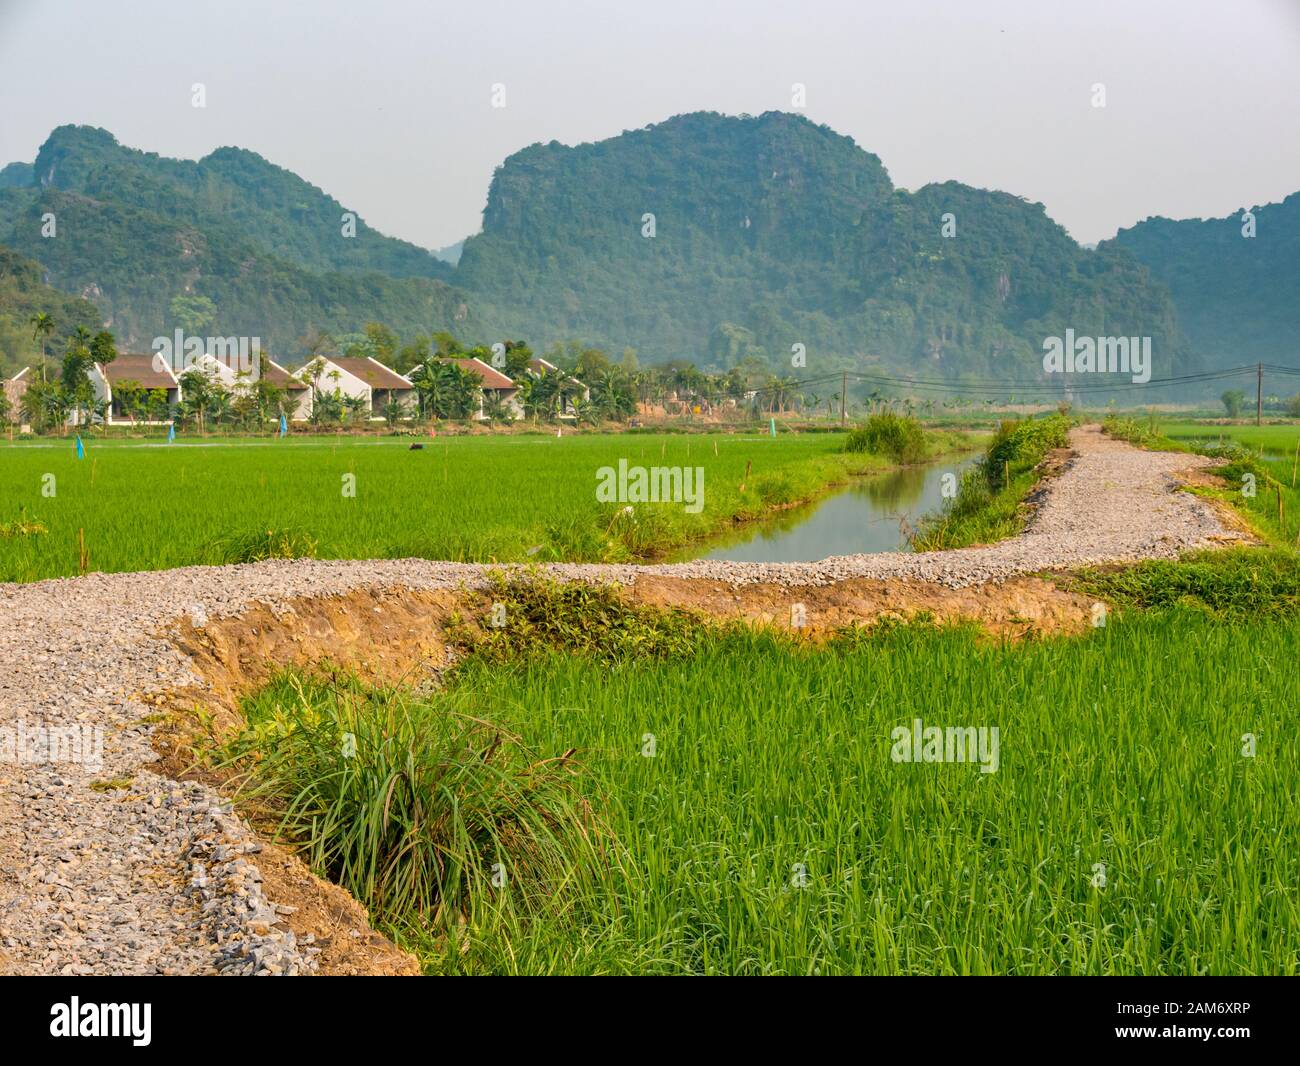 Pista de grava que conduce a través de arrozales con canal de irrigación de agua y vistas de las montañas de piedra caliza karst, Tam Coc, Ninh Binh, Vietnam, Asia Foto de stock